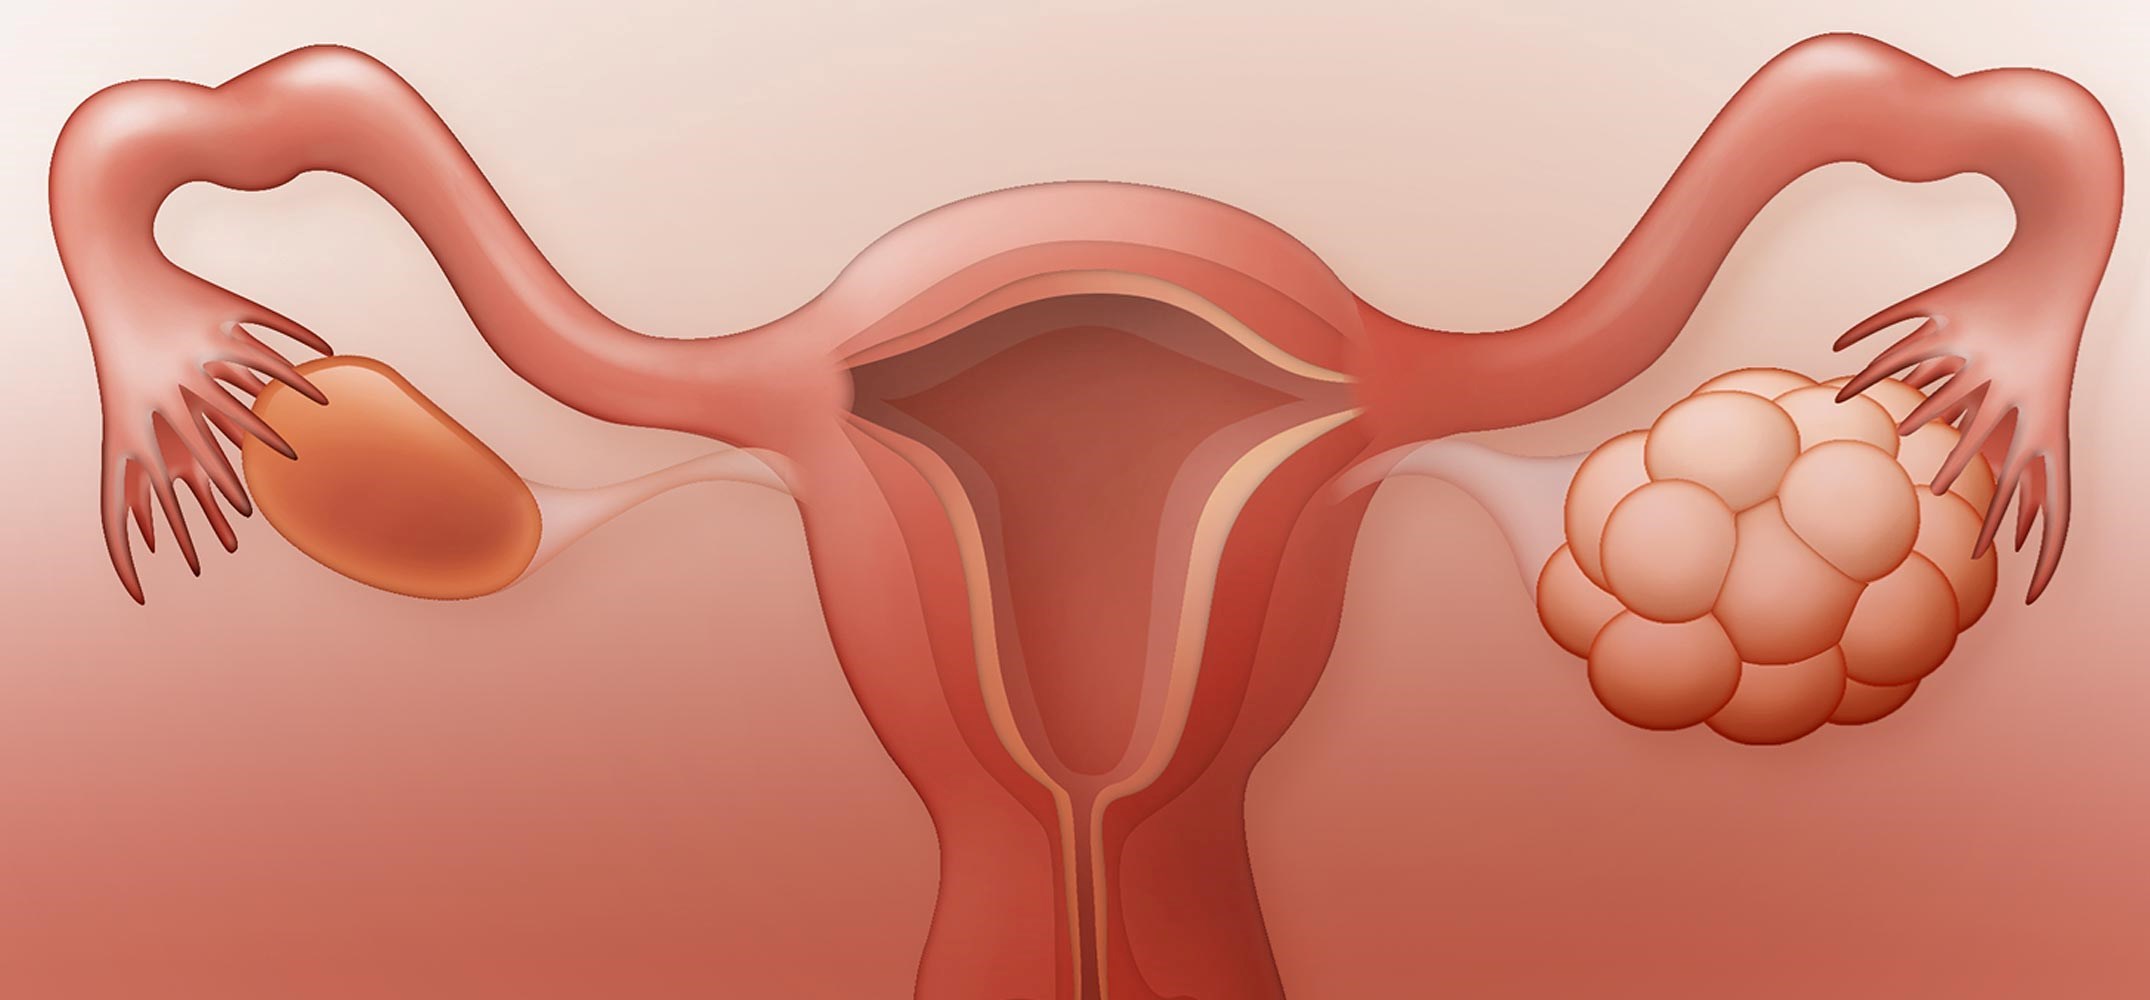 هل ارتفاع الرحم يمنع الحمل عالم حواء